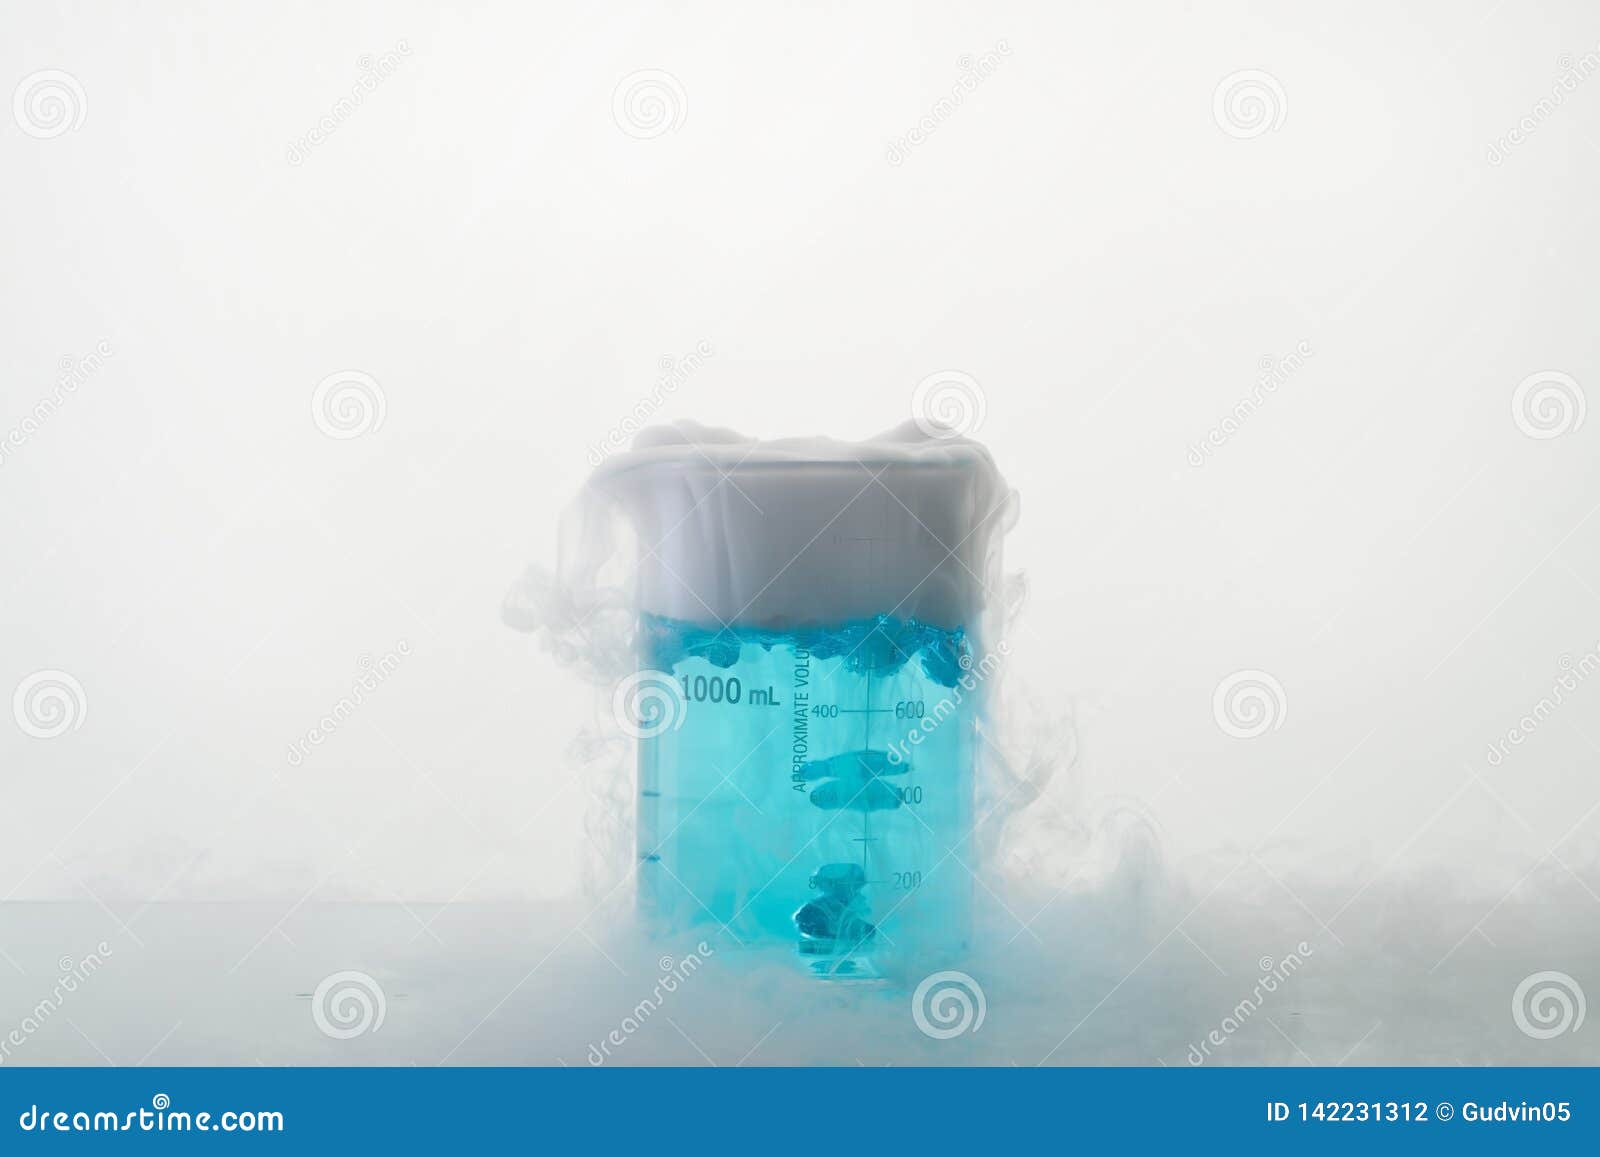 Humo de hielo seco fotografías e imágenes de alta resolución - Alamy